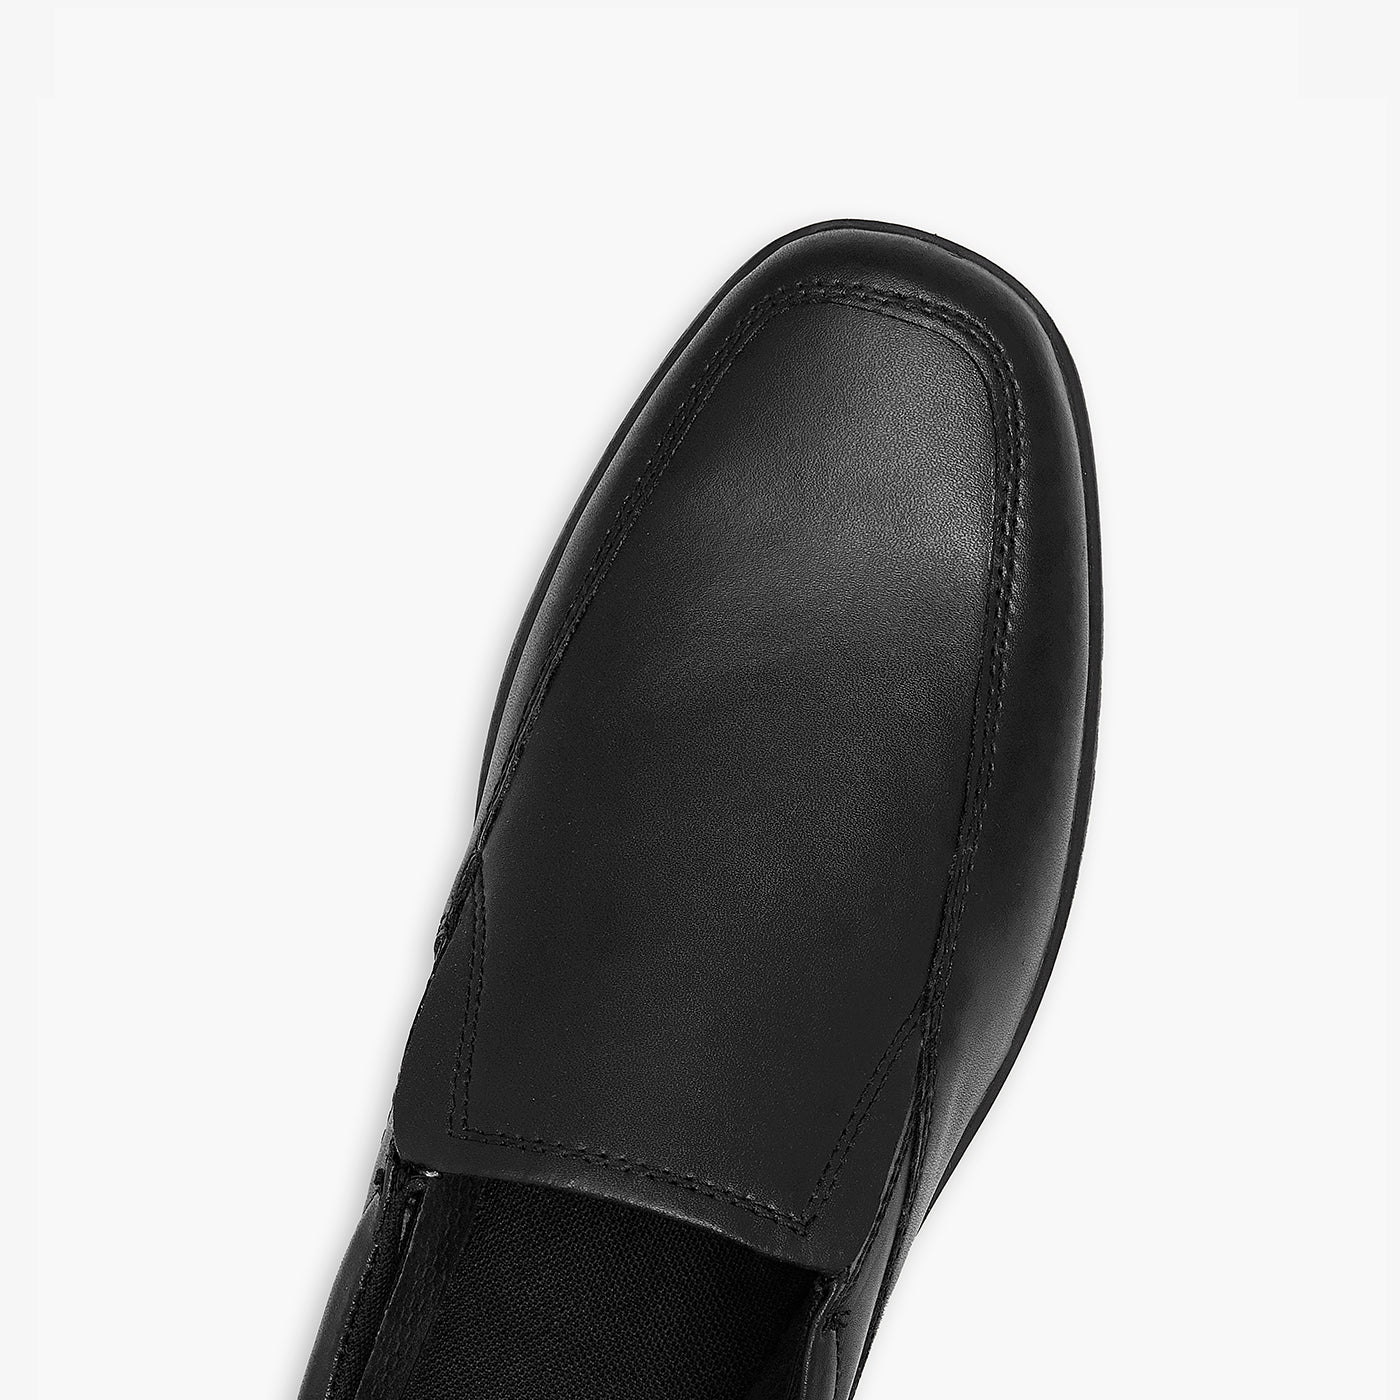 Formal Loafers for Men